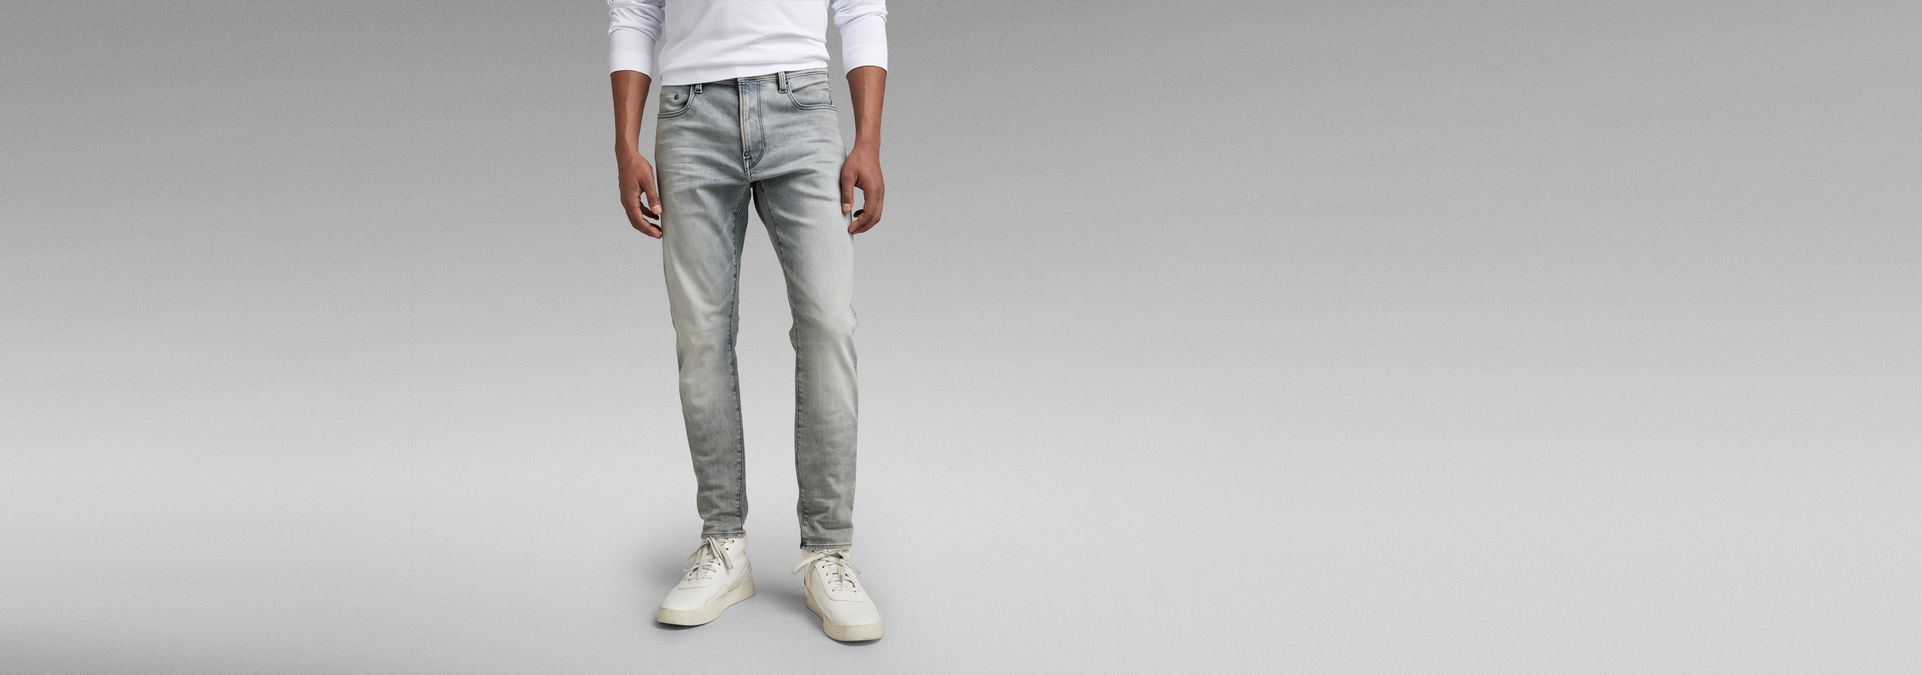 Revend FWD Skinny Grey US Jeans | G-Star RAW® 